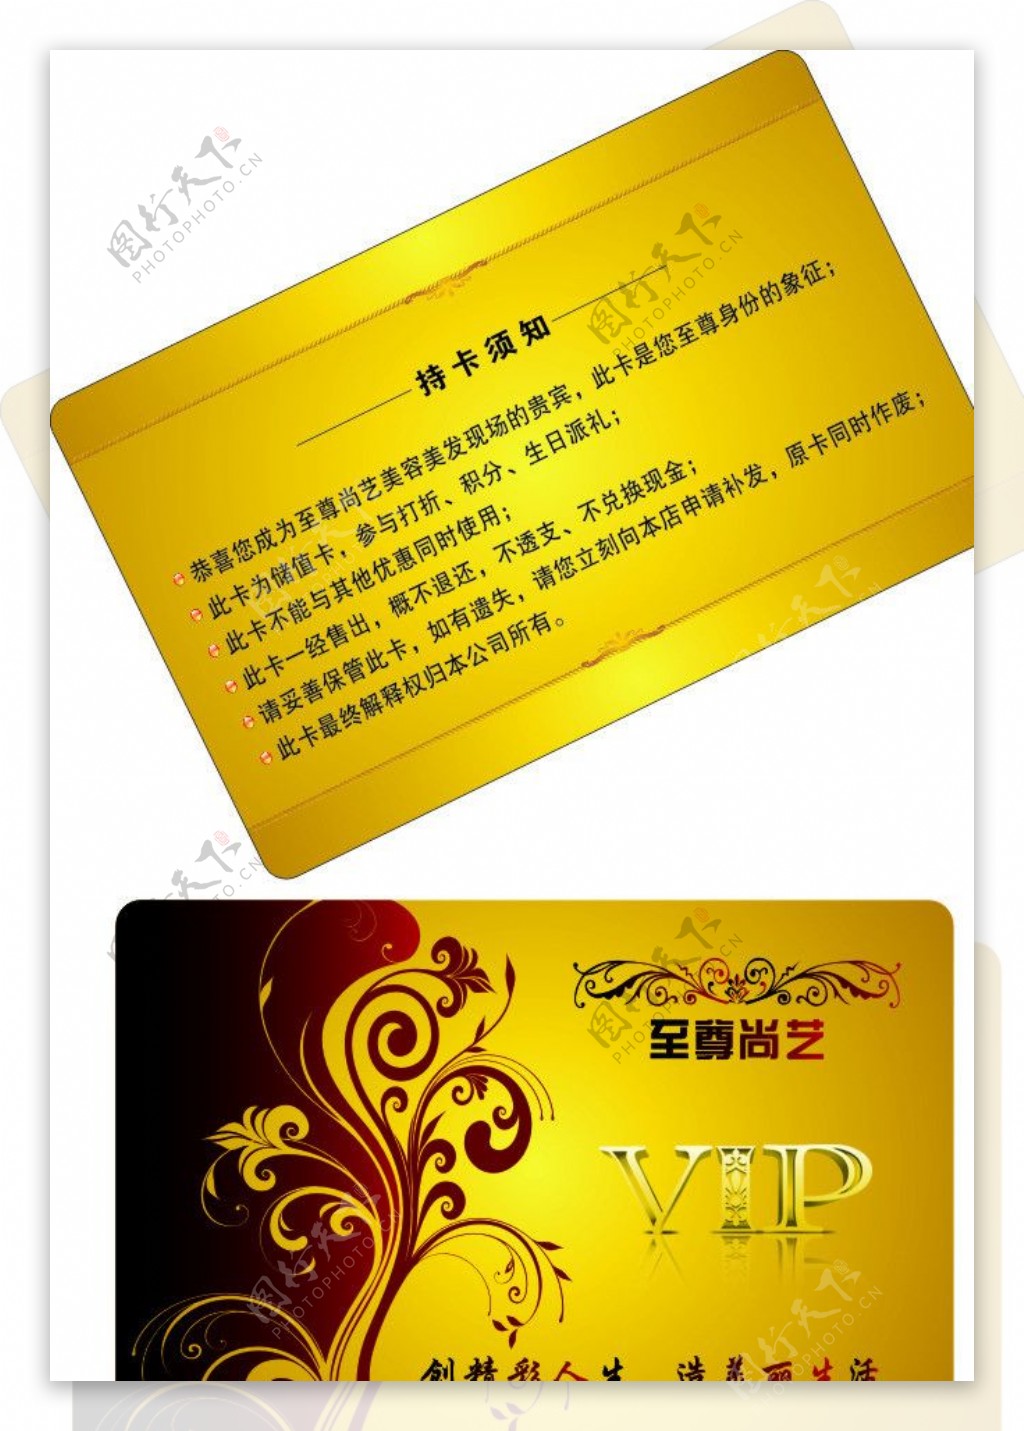 金色PVC卡图片